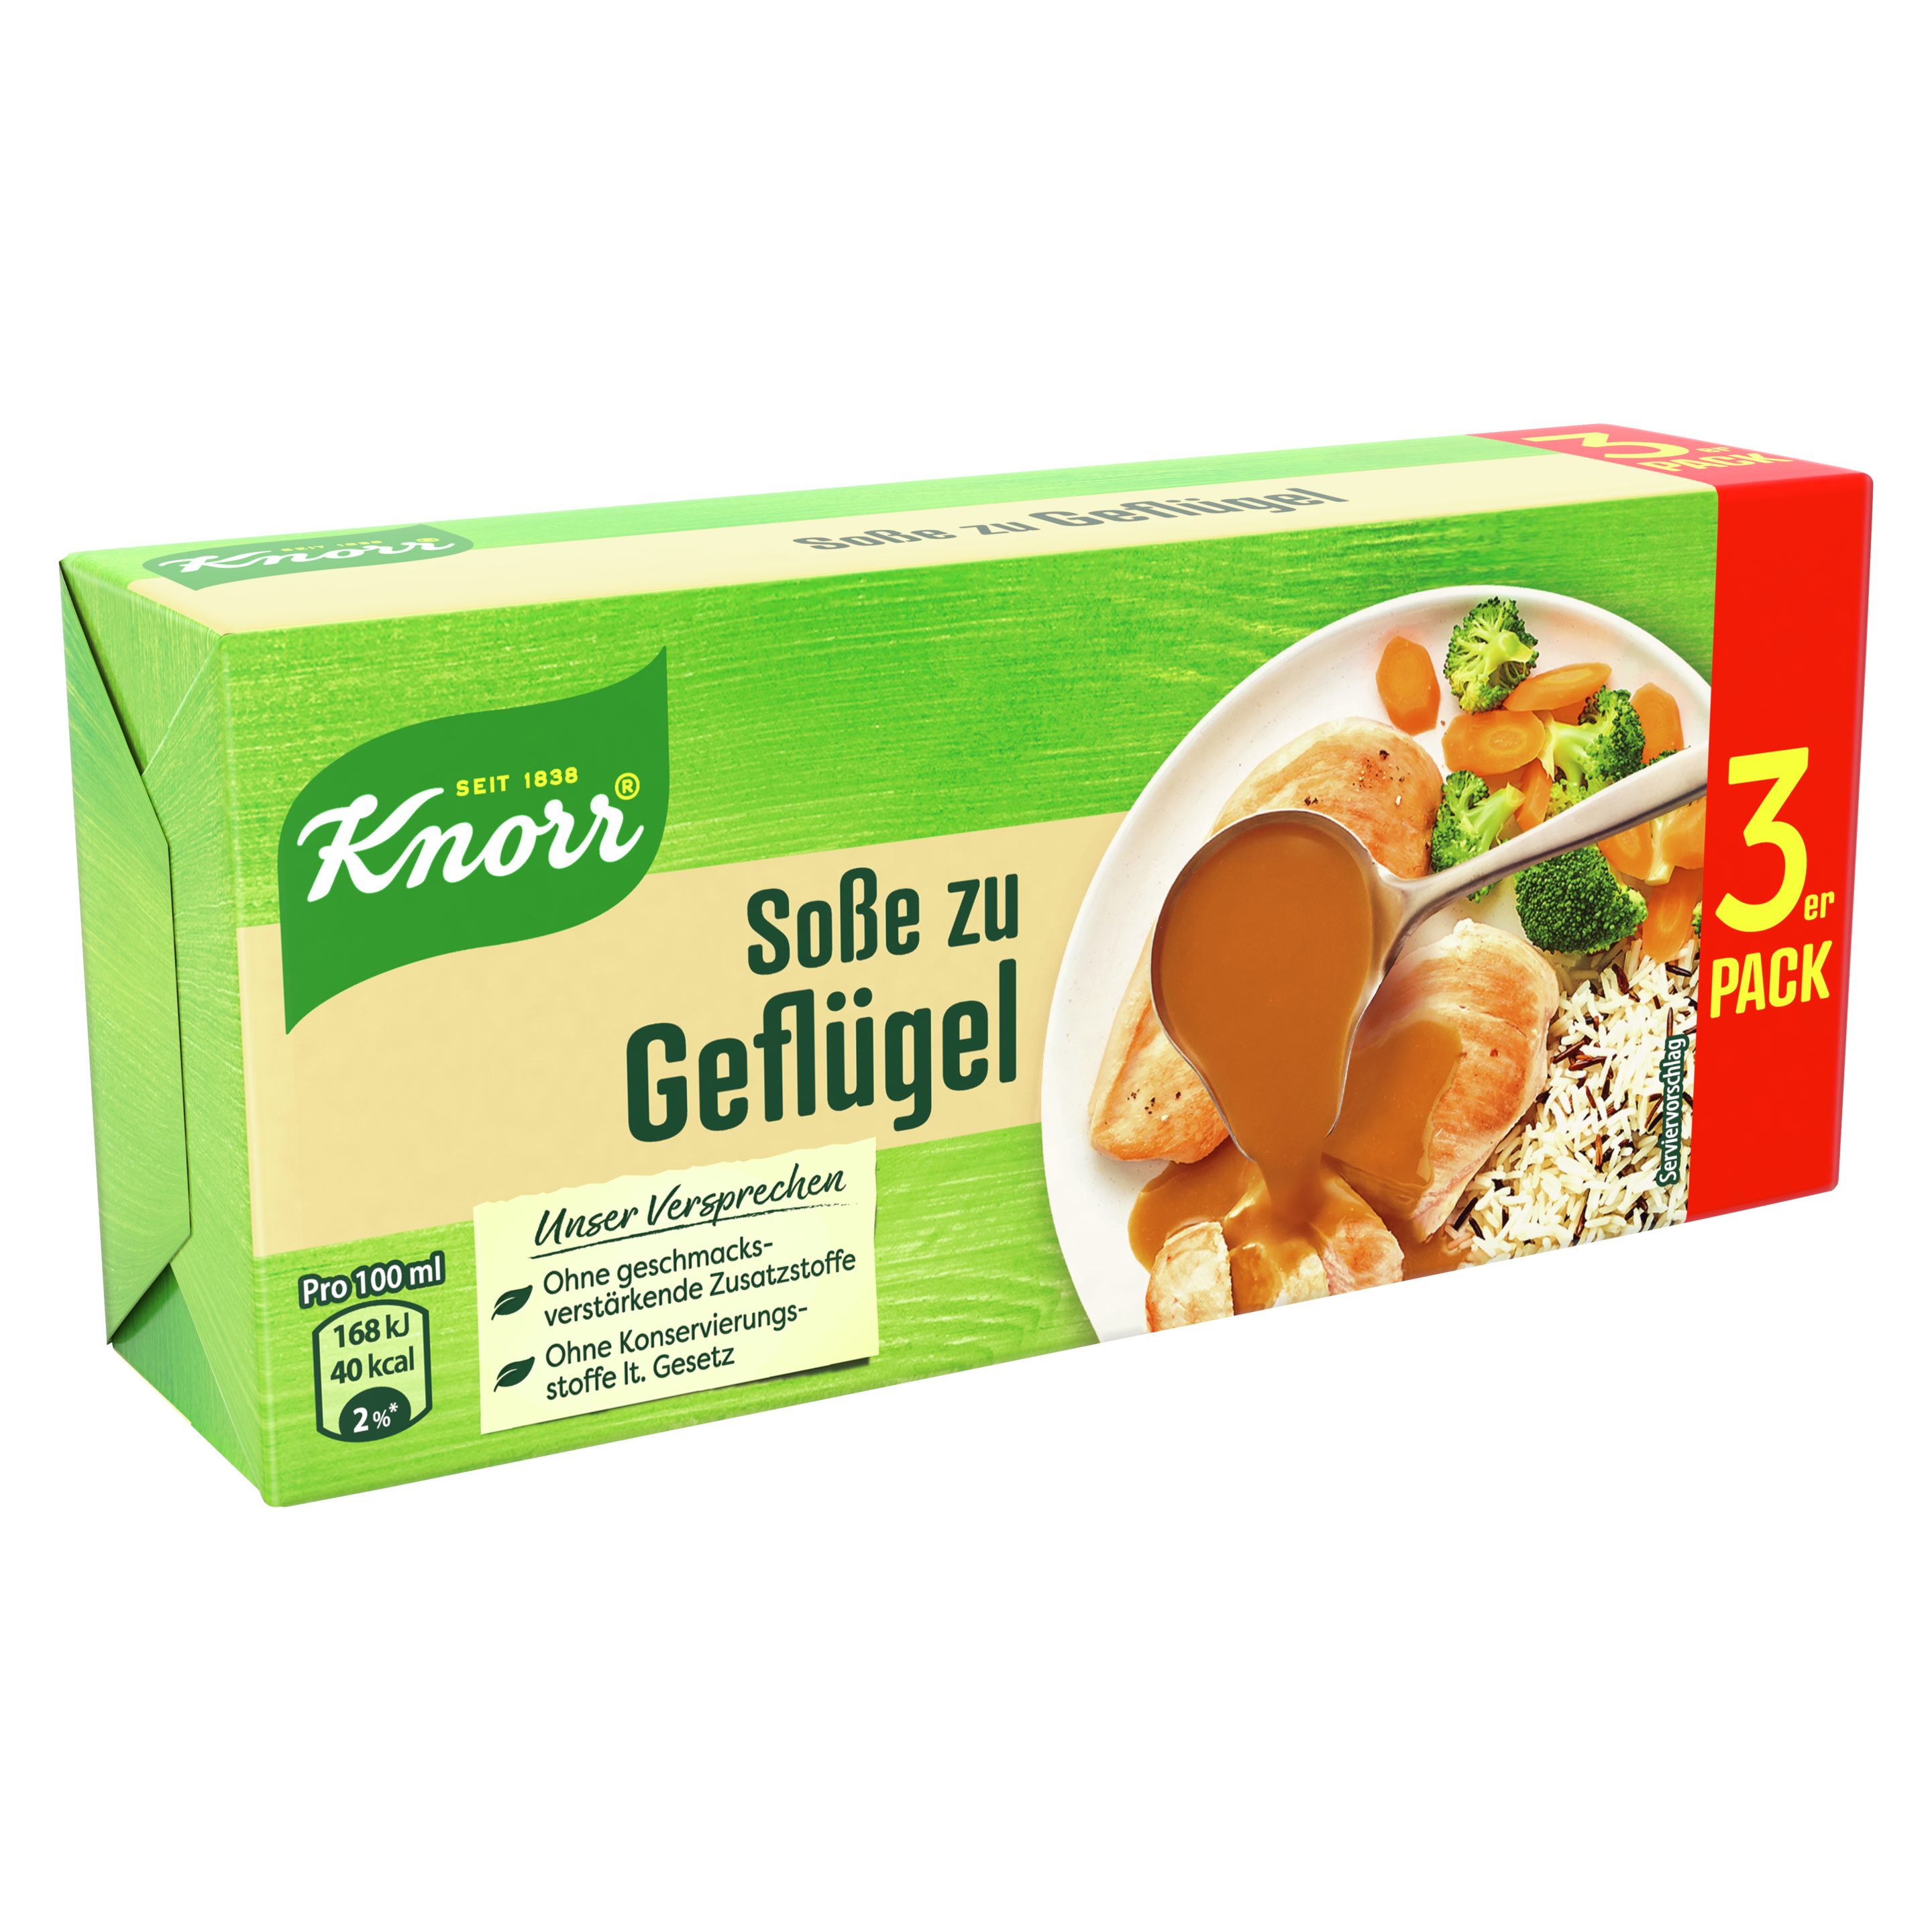 Knorr Soße zu Geflügel Würfel 3x 1/4l